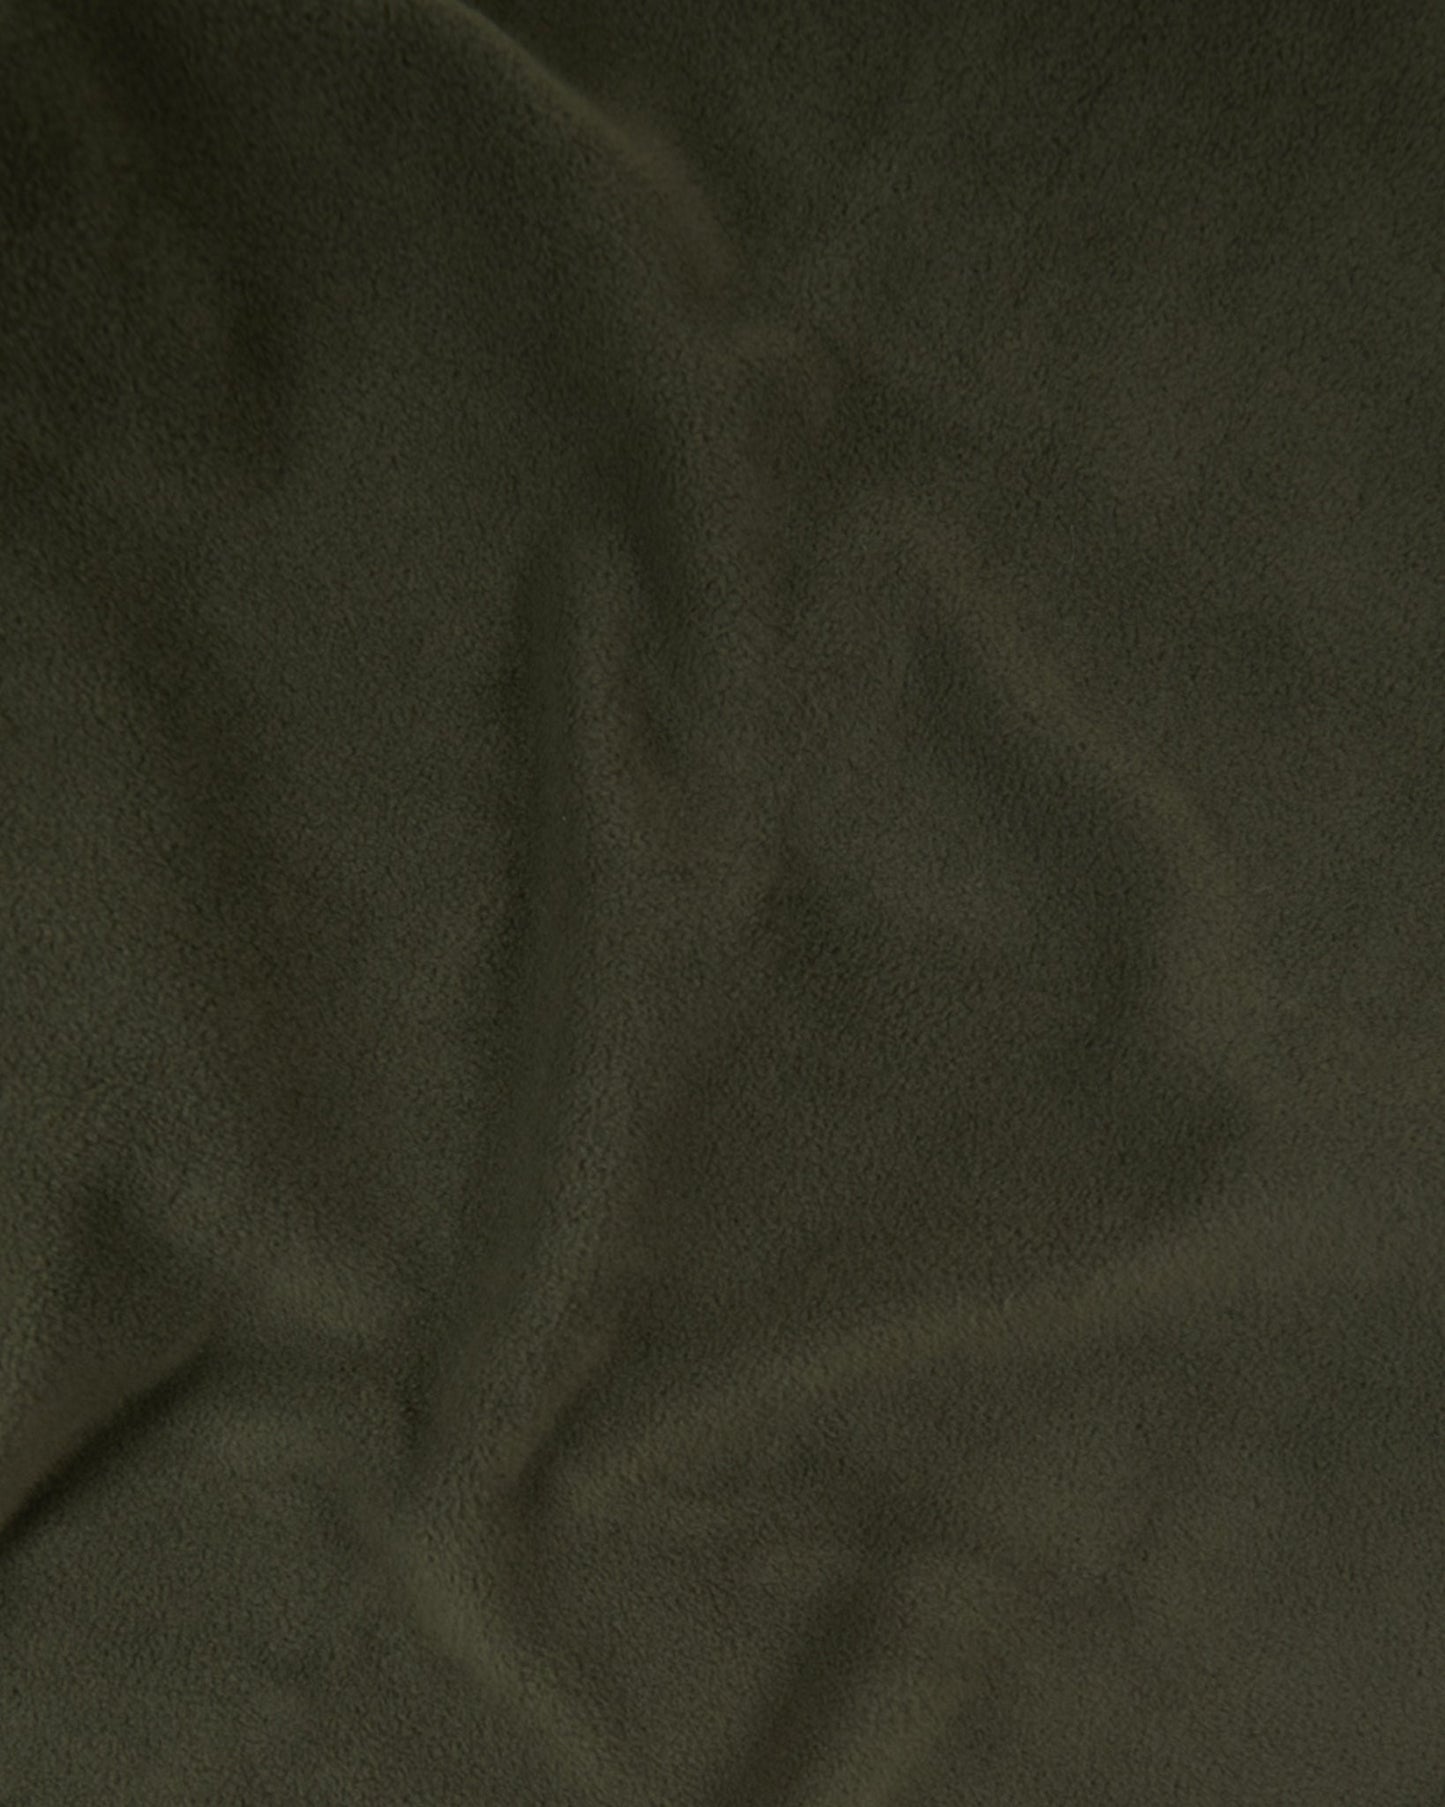 Khaki Washable Fleece Blanket